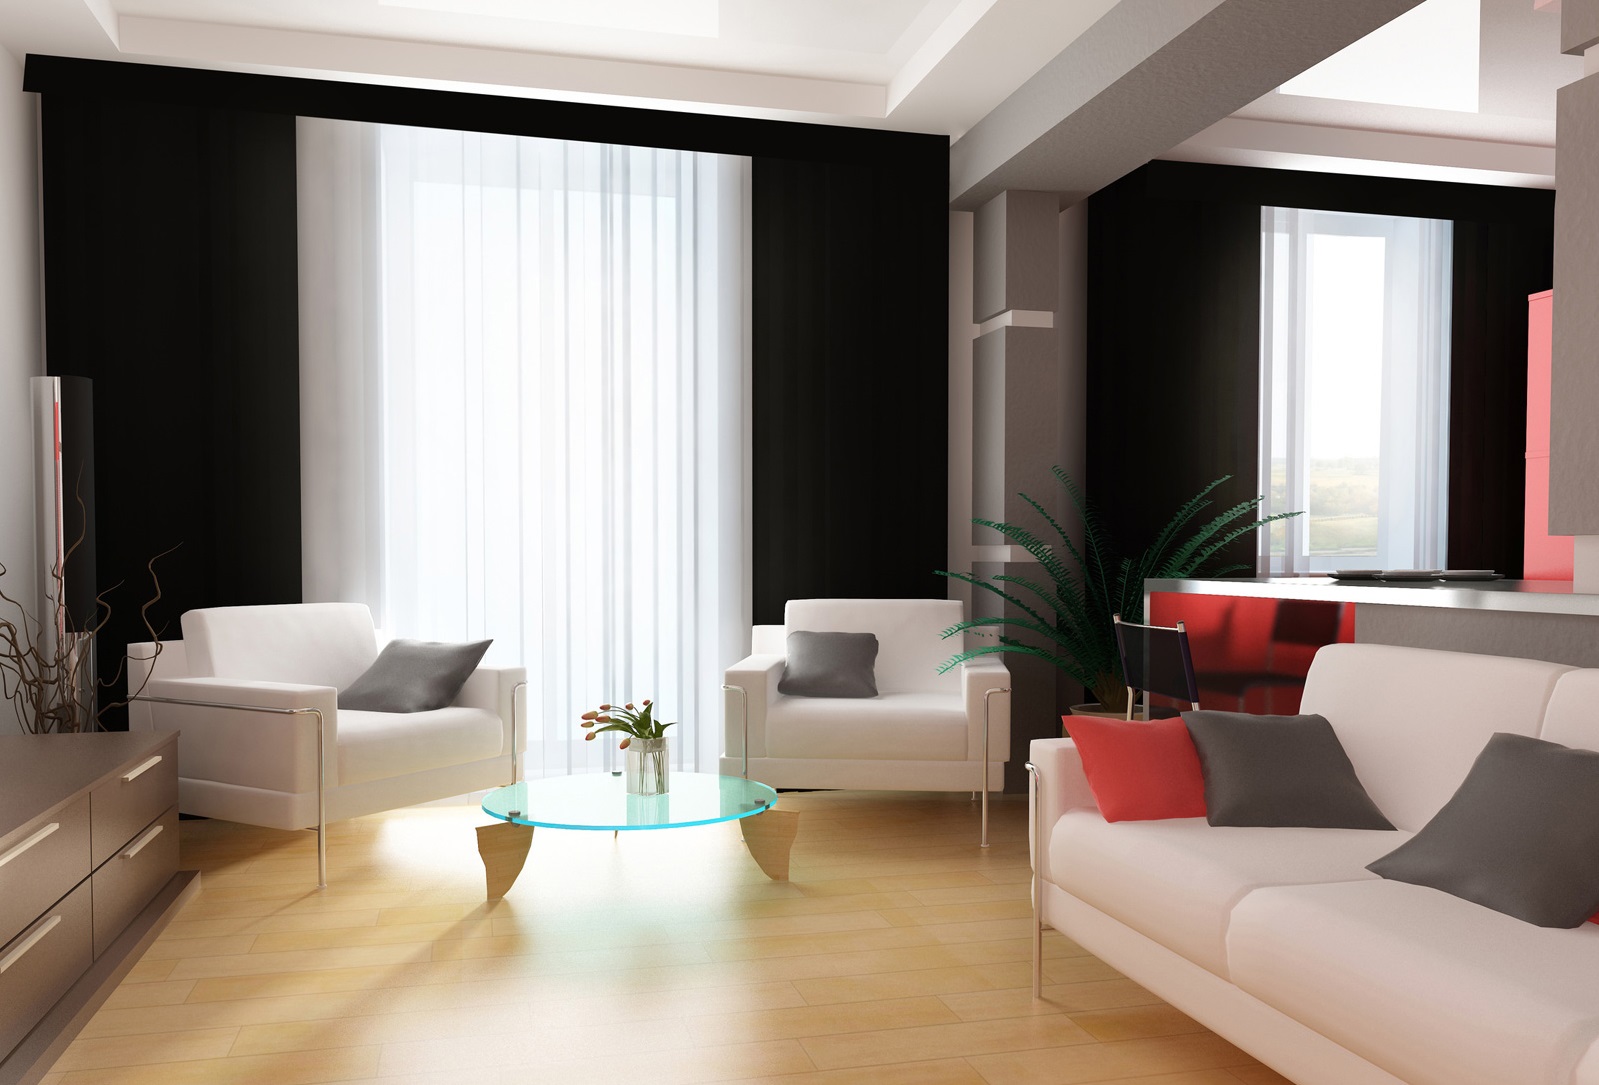 beaux-rideaux-modernes-pour-salon-16-set-magnifique-appliquant-accent-noir-mur-couleur-assortie-avec-blanc-complet-canapé-aussi-chaises-et-table-en-verre-bleu- in-circle-designjpg